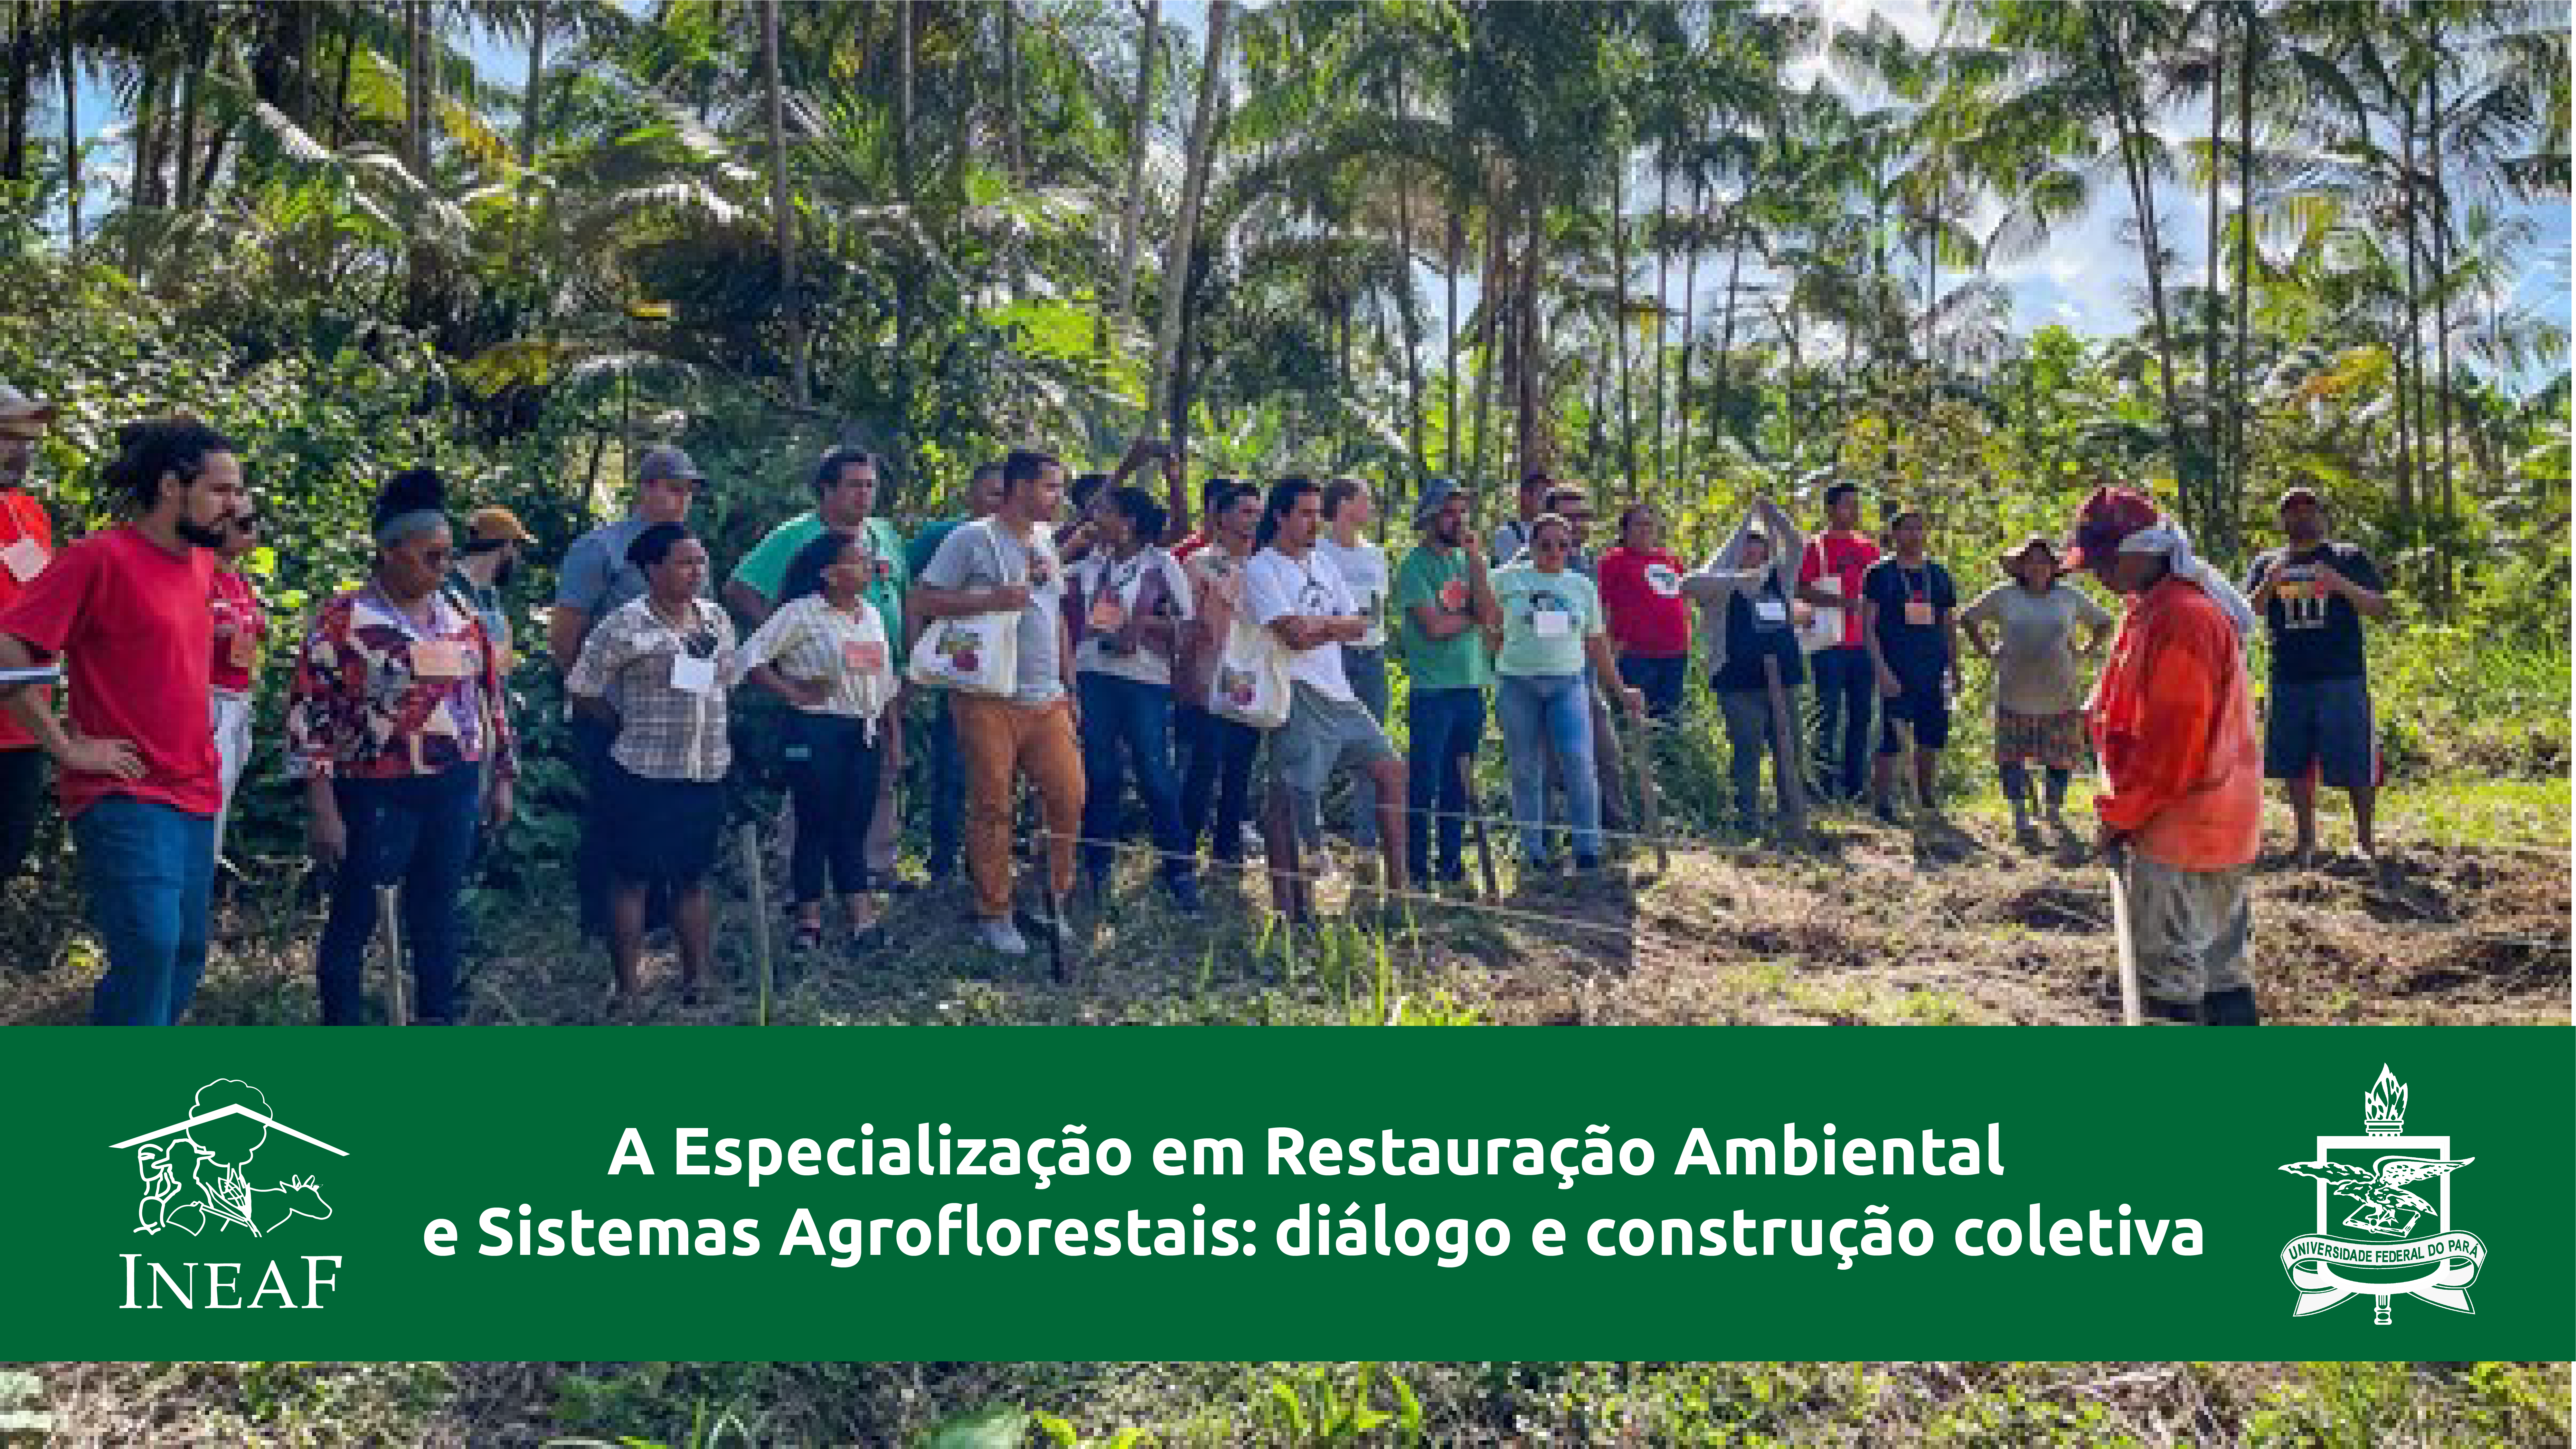 A Especialização em Restauração Ambiental e Sistemas Agroflorestais: diálogo e construção coletiva